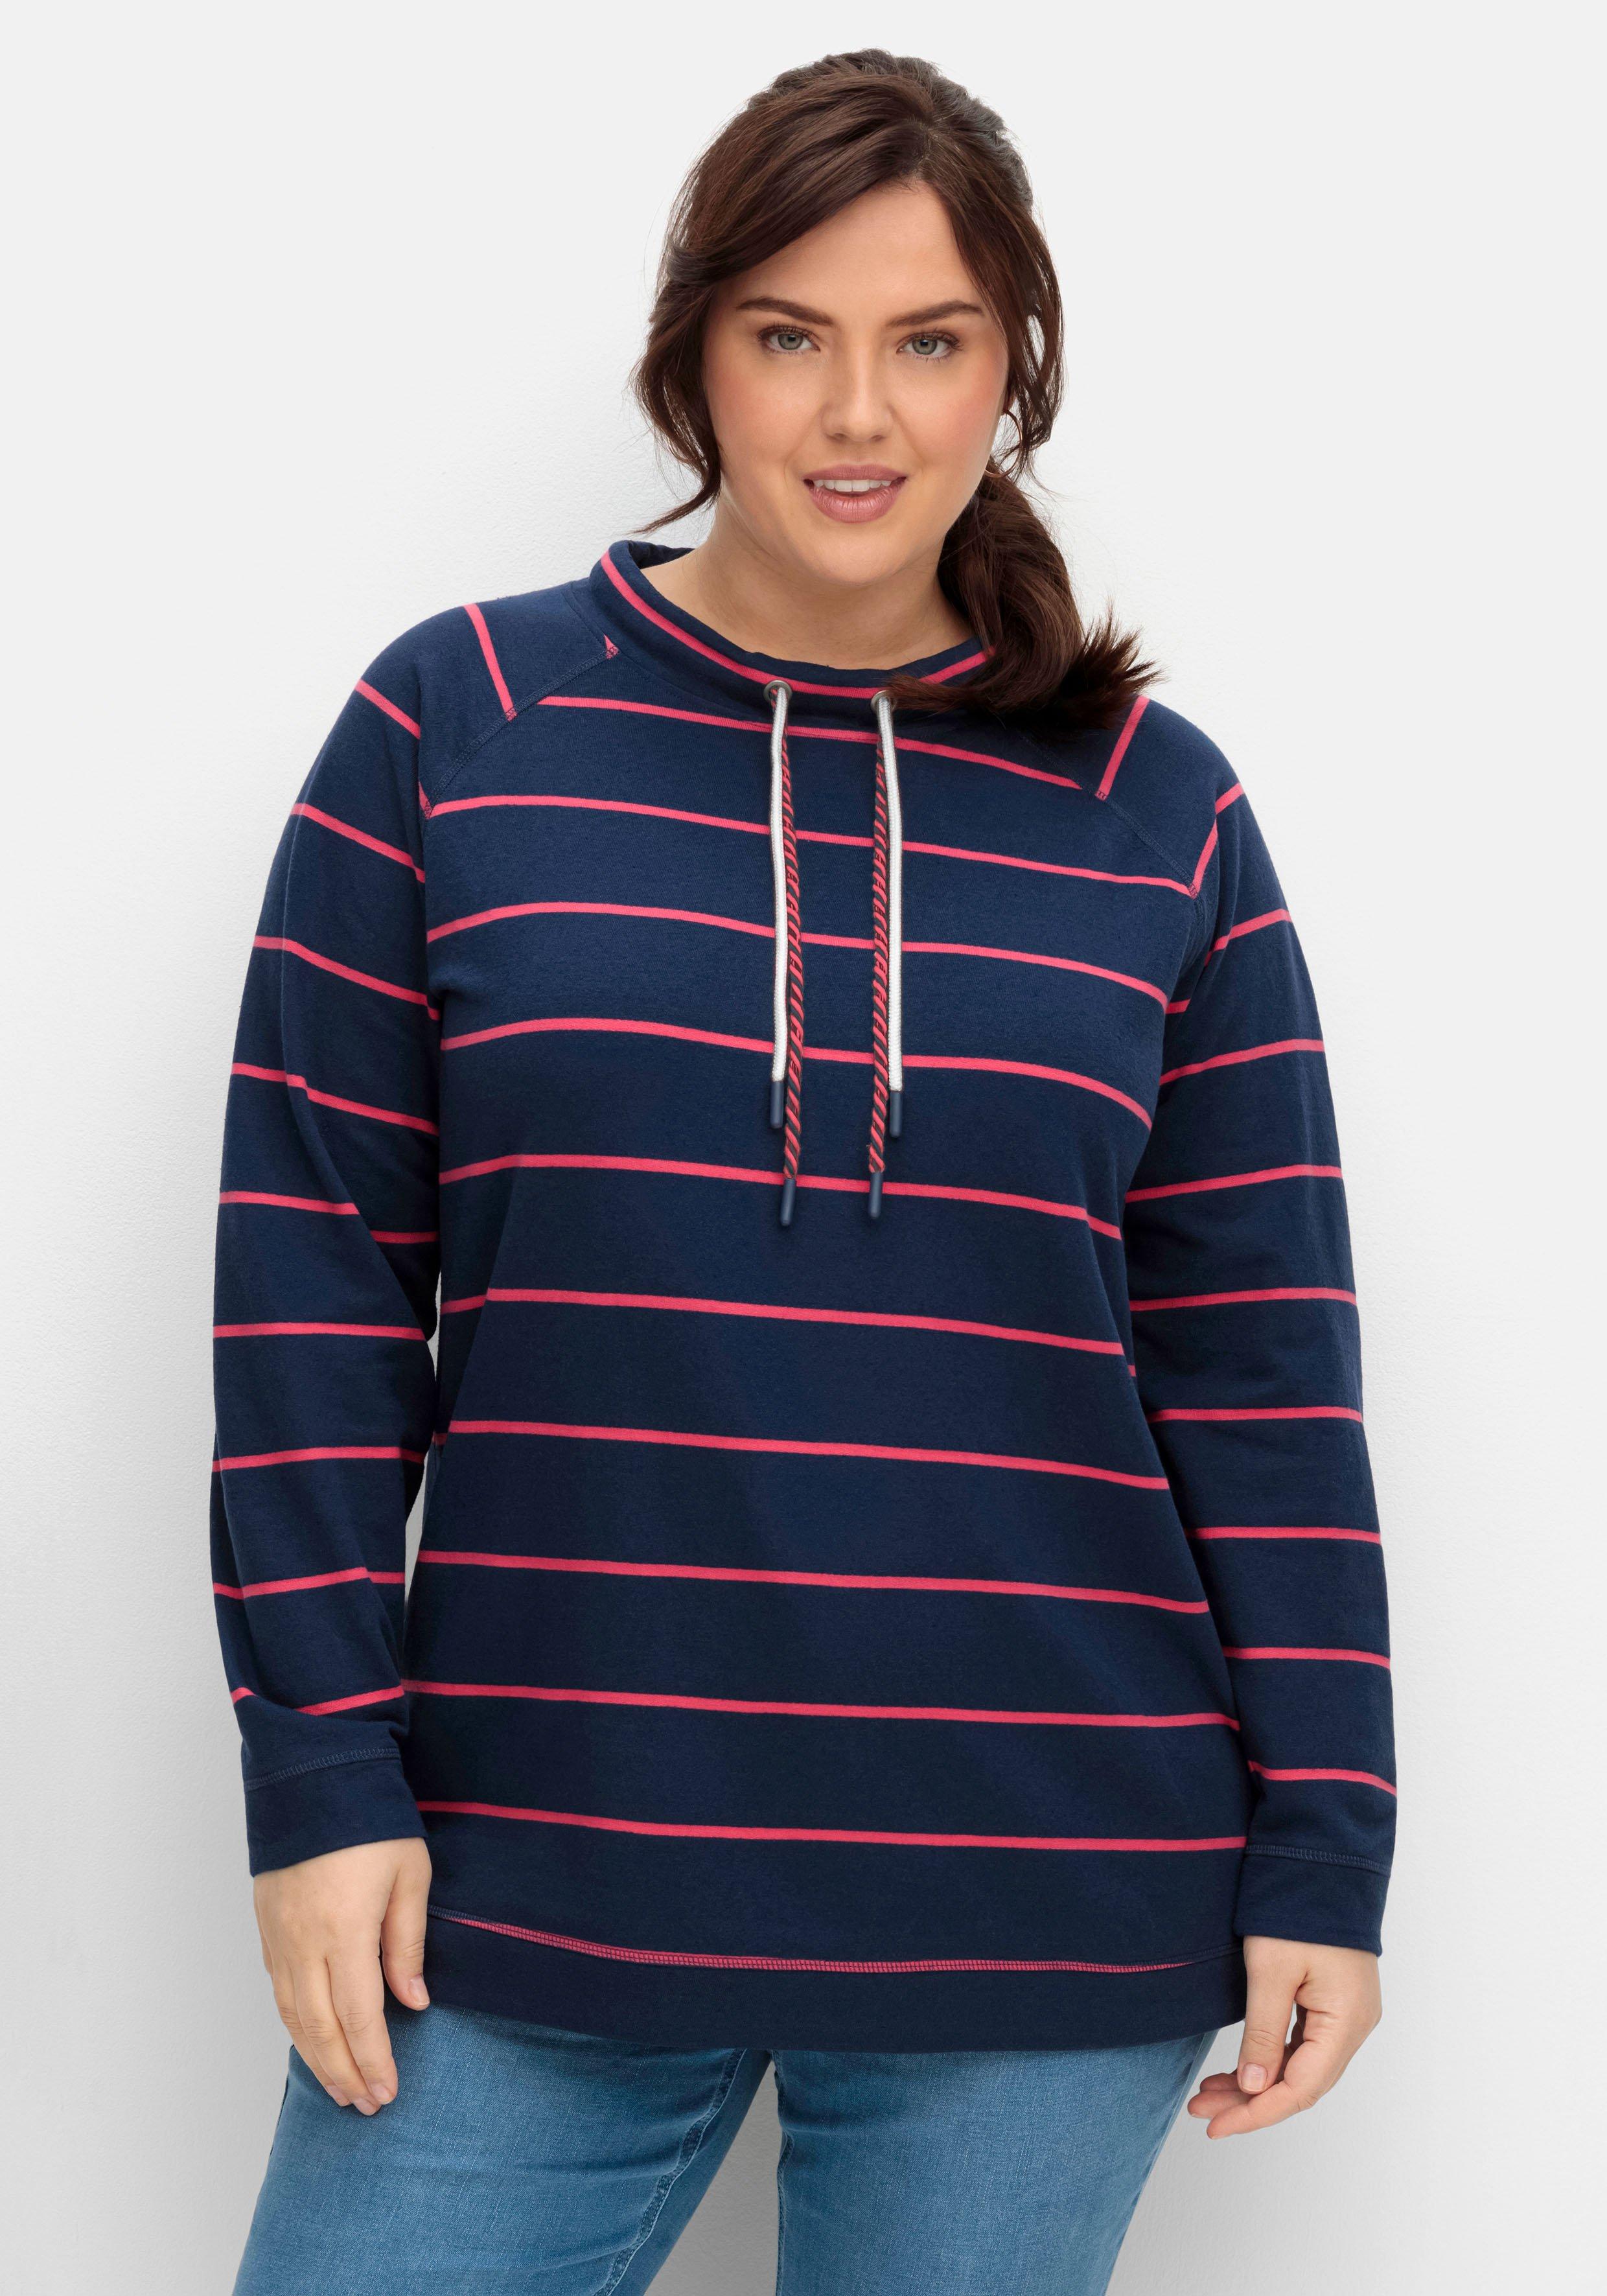 Damen Sweatshirts & -jacken große Größen › Größe 58 | sheego ♥ Plus Size  Mode | Zip Hoodies